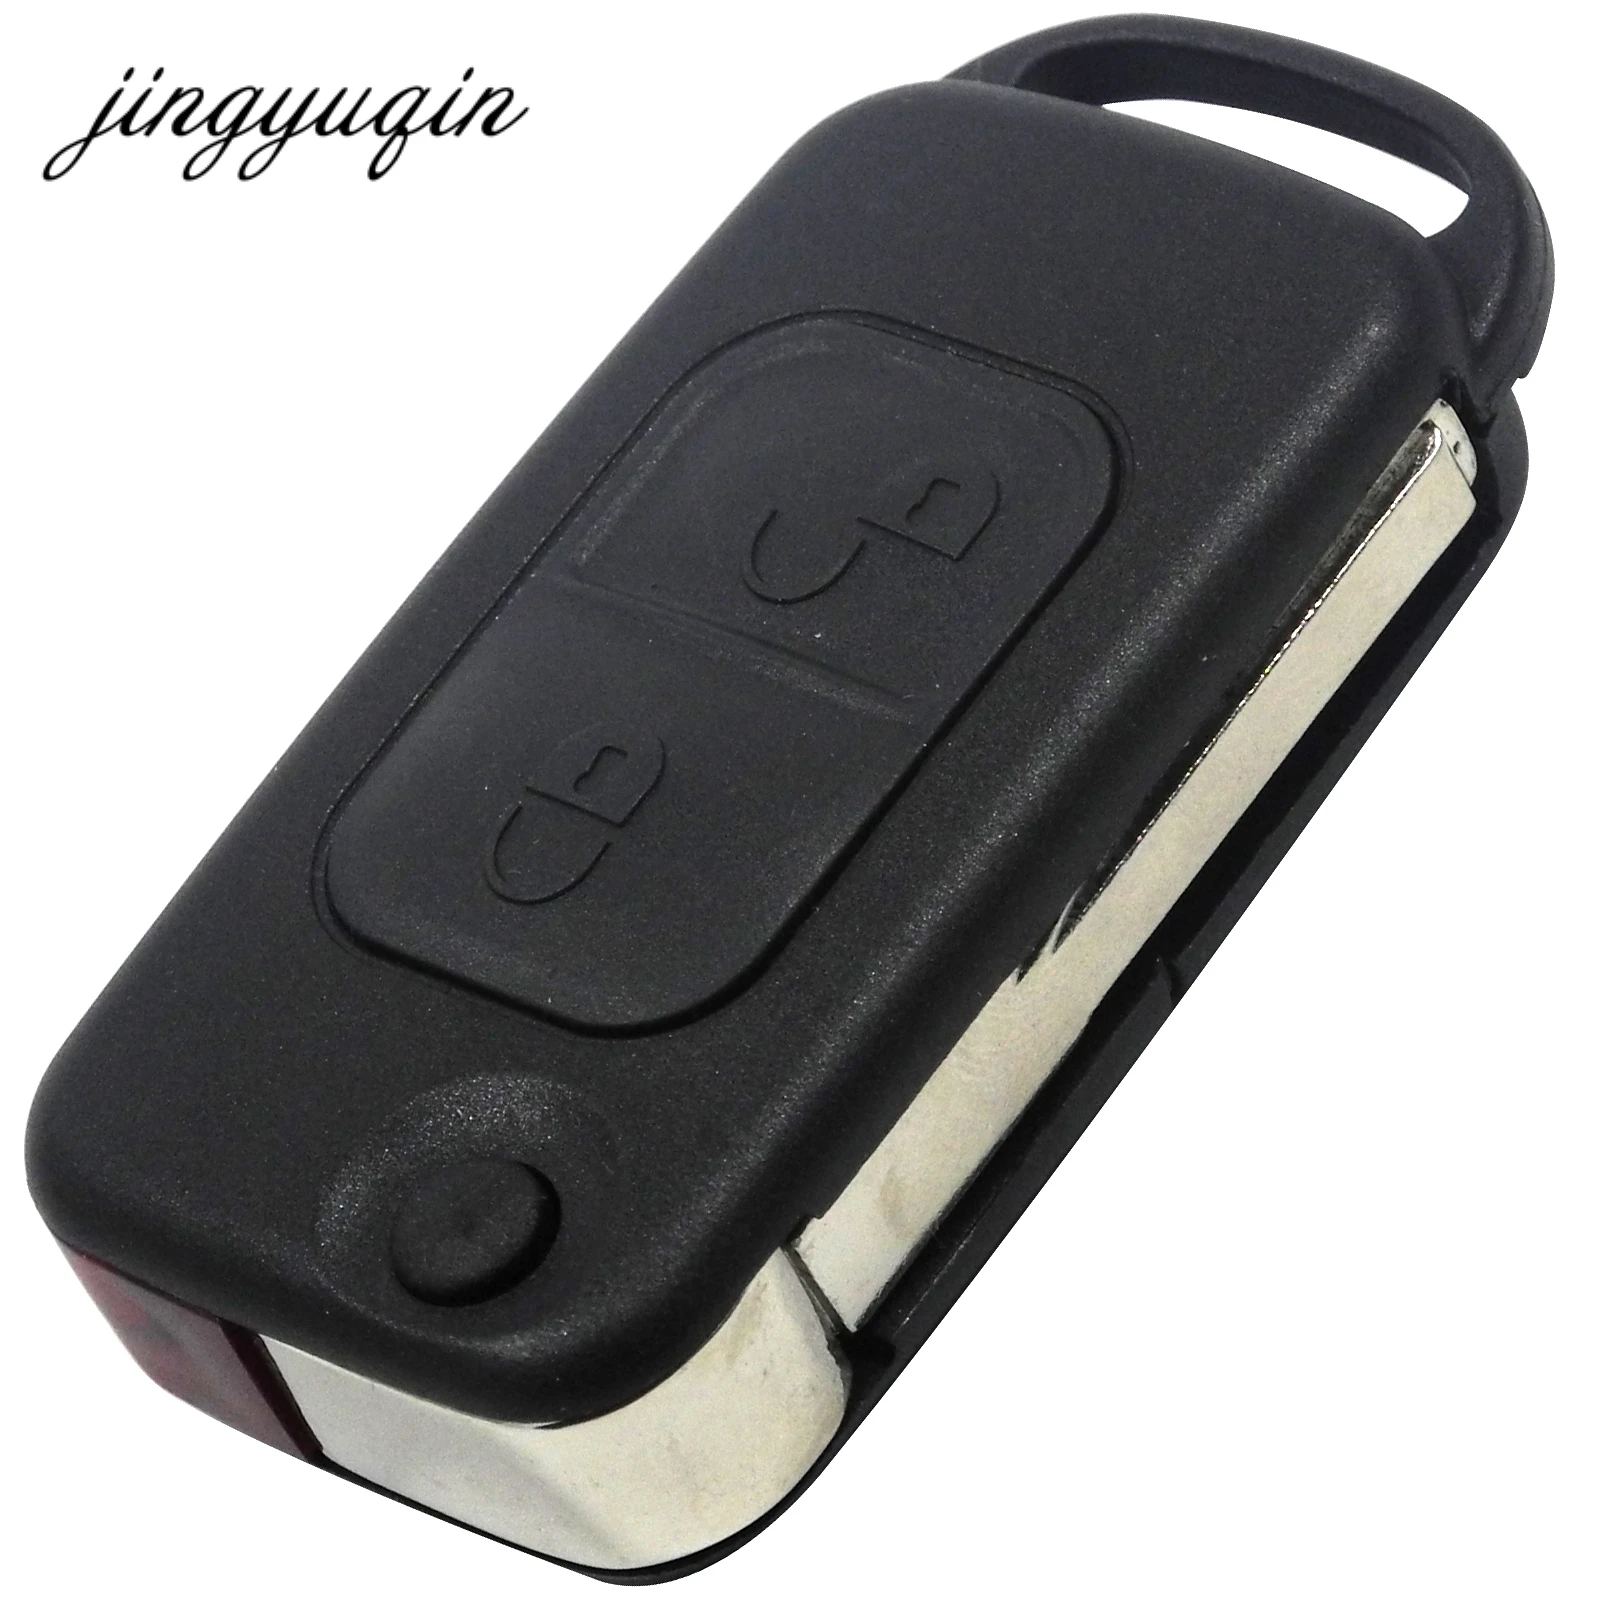 jingyuqin Flip Folding Car Case Remote Key Shell For Mercedes Benz SLK E113 A C E S W168 W202 W203 HU64 Blade 1/2/3/4 Button